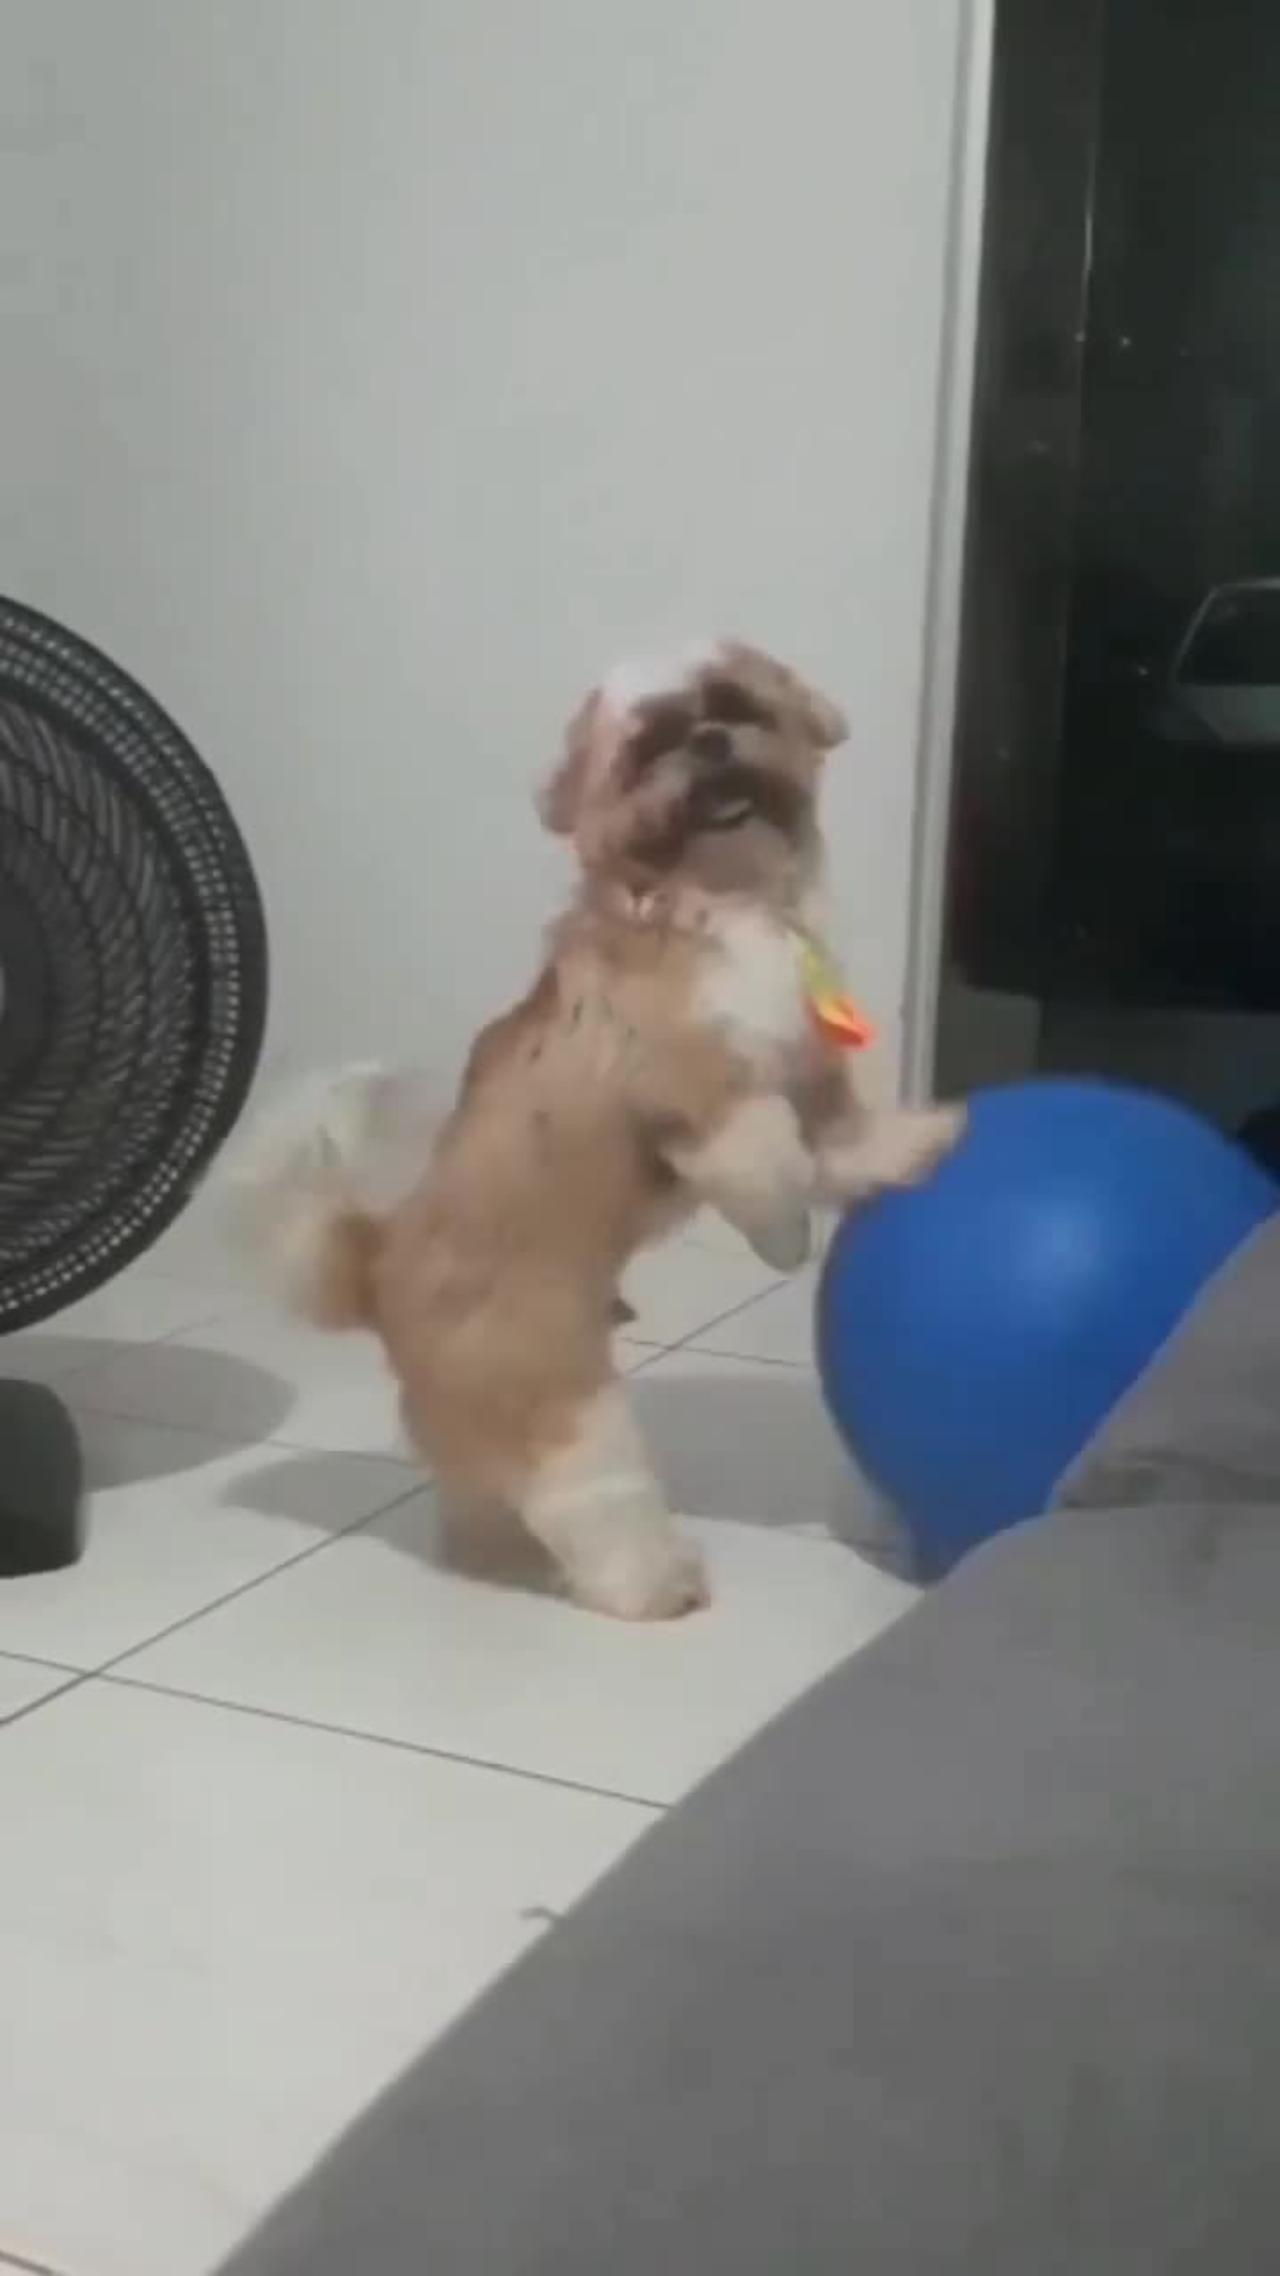 Dog playing